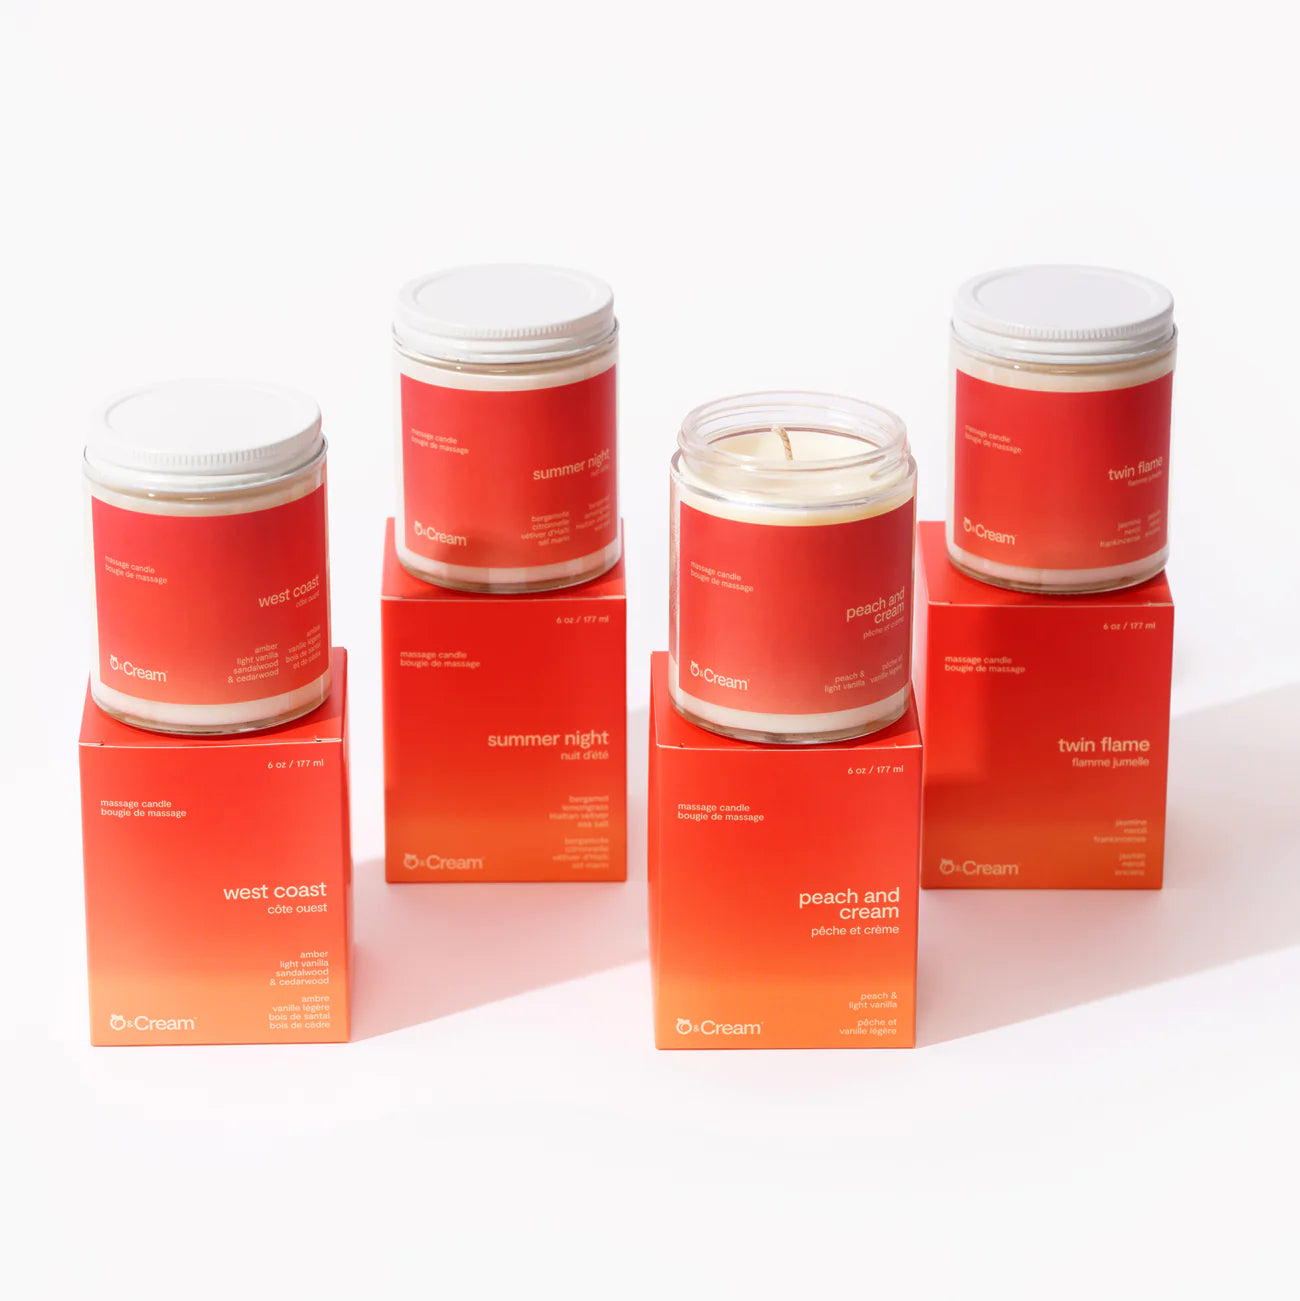 Bougies de massages par Peach and Cream - 4 parfums disponibles